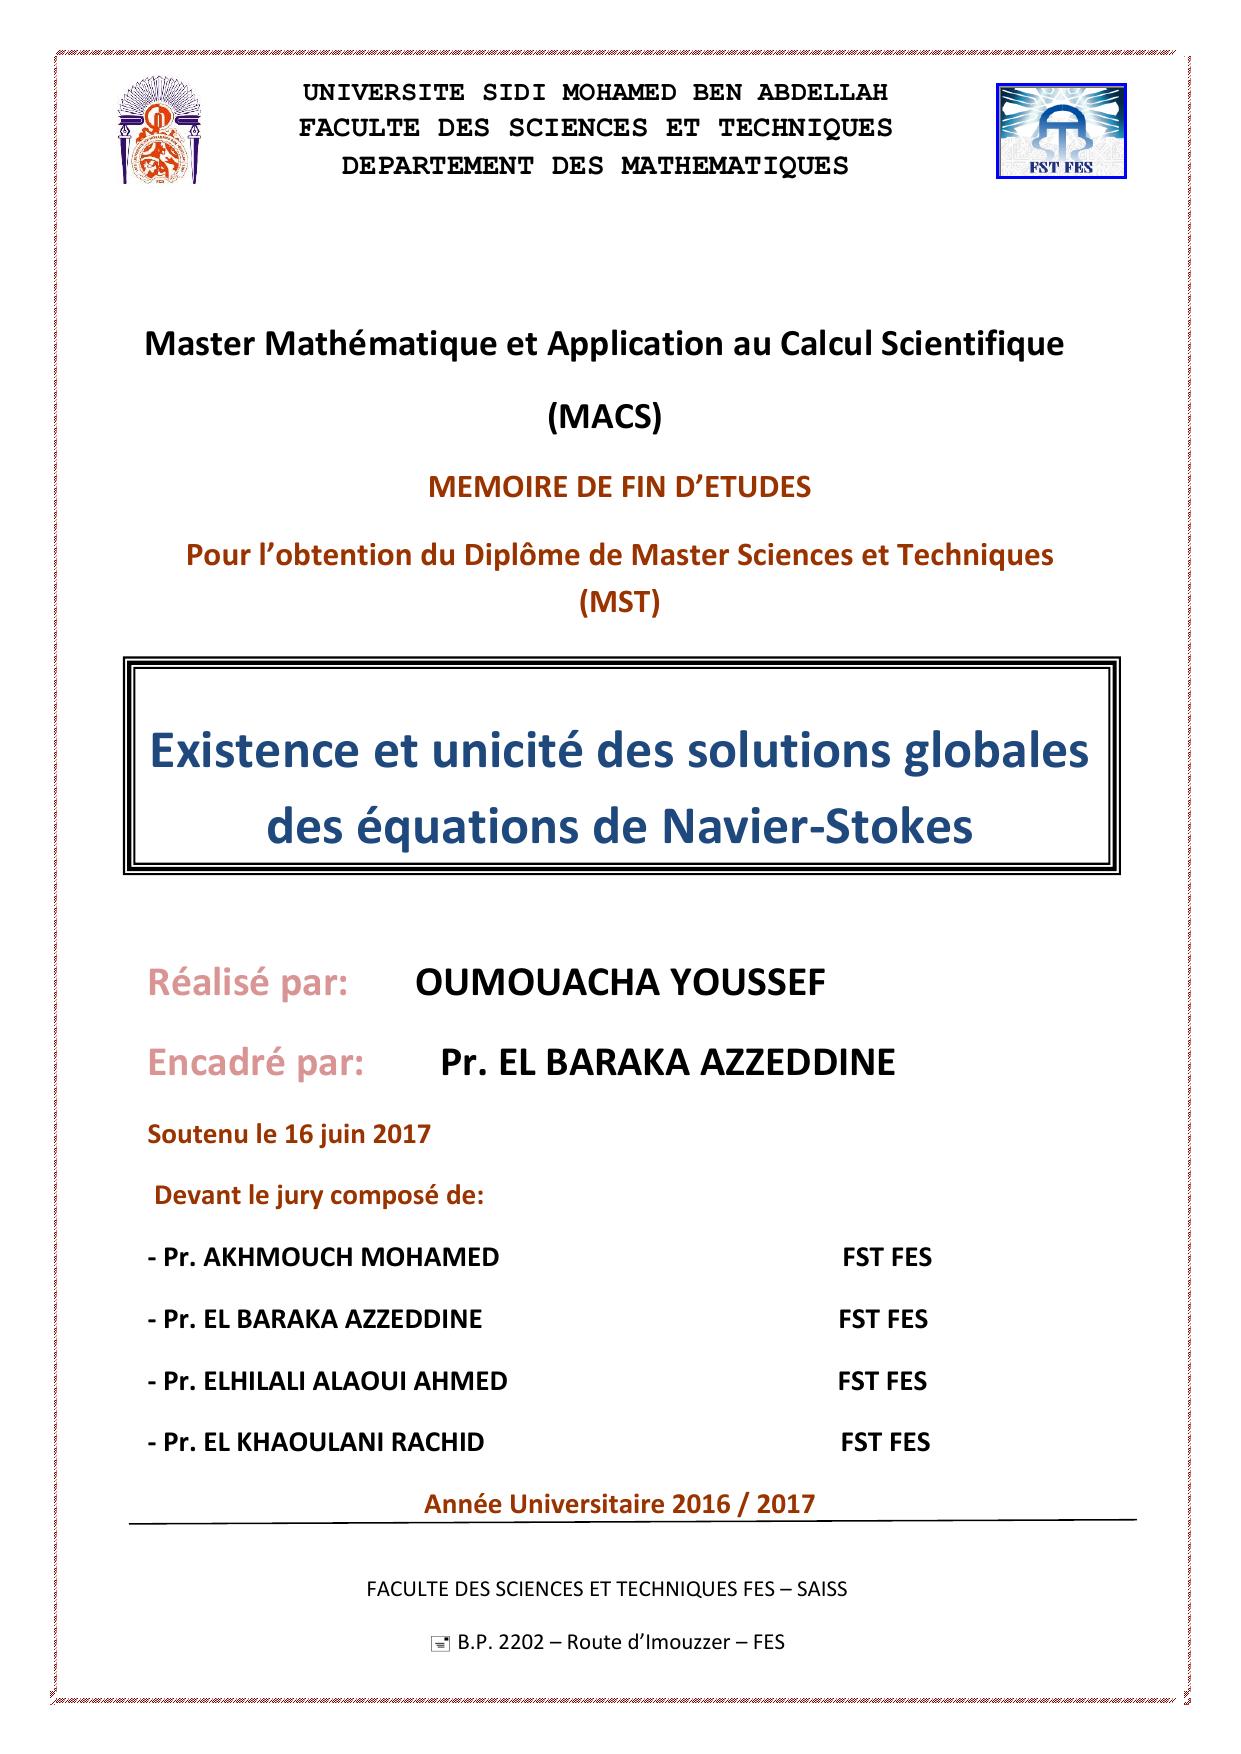 Existence et unicité des solutions globales des équations de Navier-Stokes